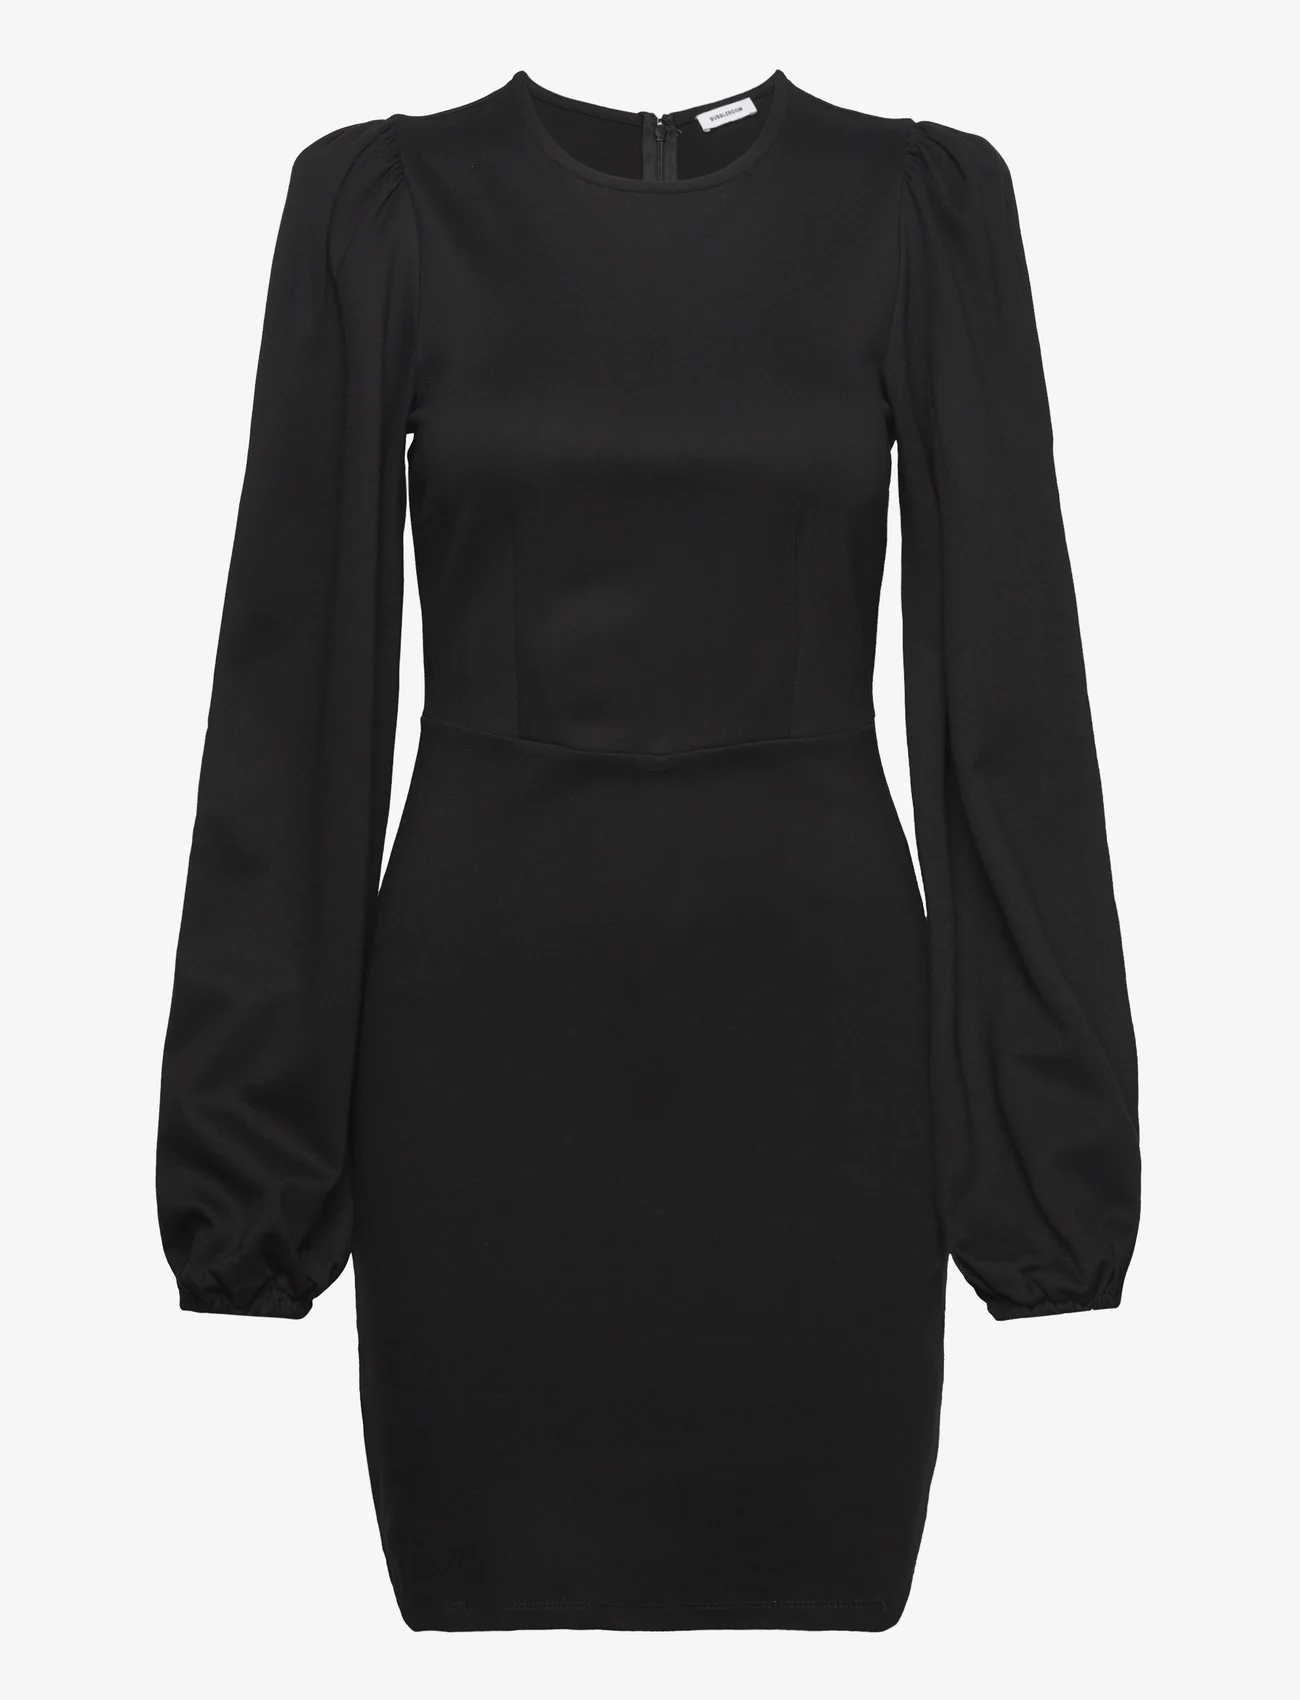 Bubbleroom - Idalina Puff Sleeve Dress - etuikleider - black - 0